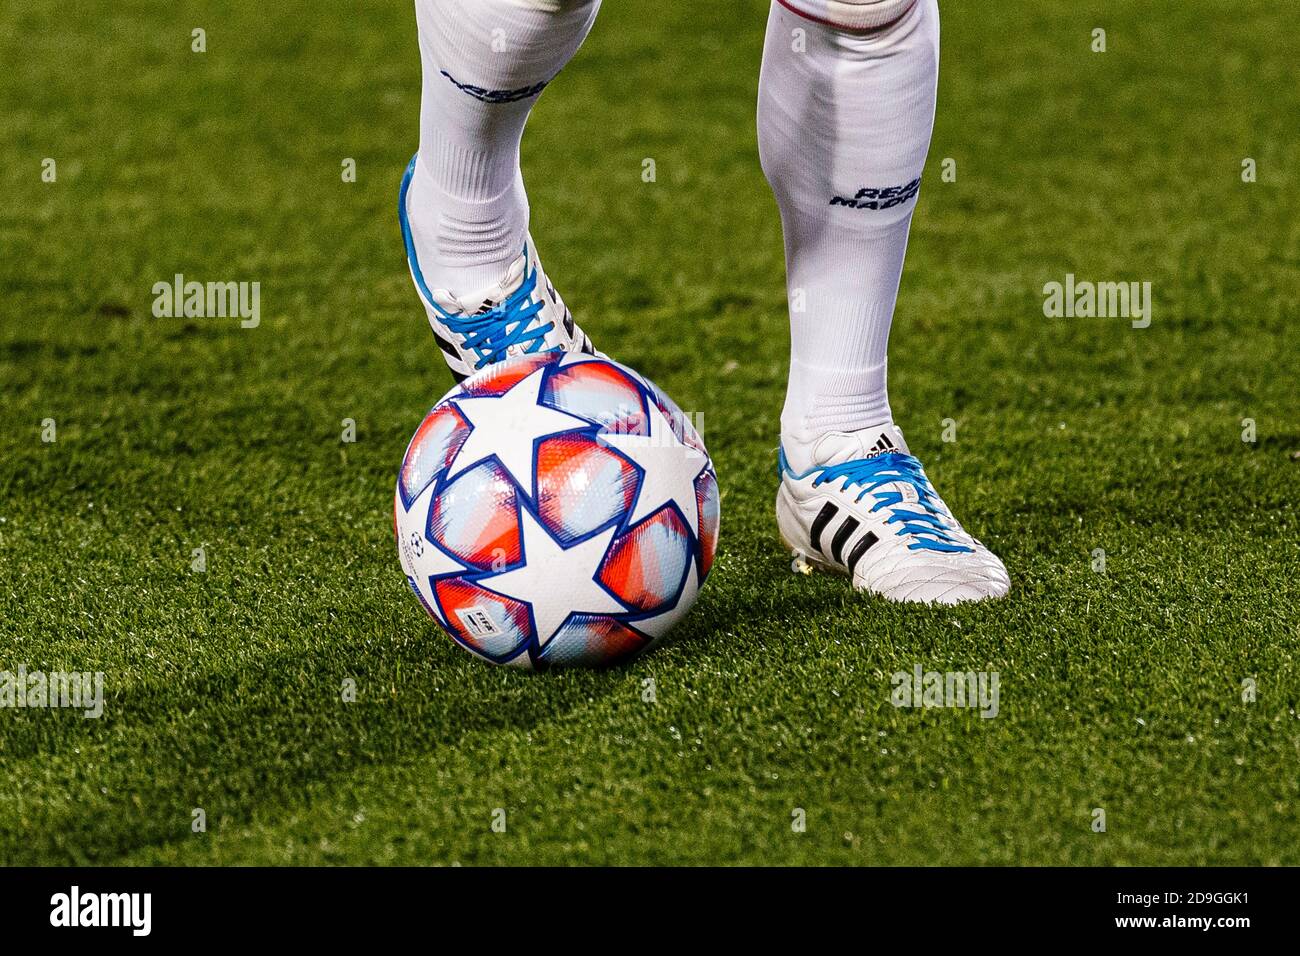 Madrid, España. 3 de noviembre de 2020. Toni Kroos del Real Madrid Adidas final 20 en acción con balón oficial de la Liga de Campeones durante la t Fotografía stock - Alamy